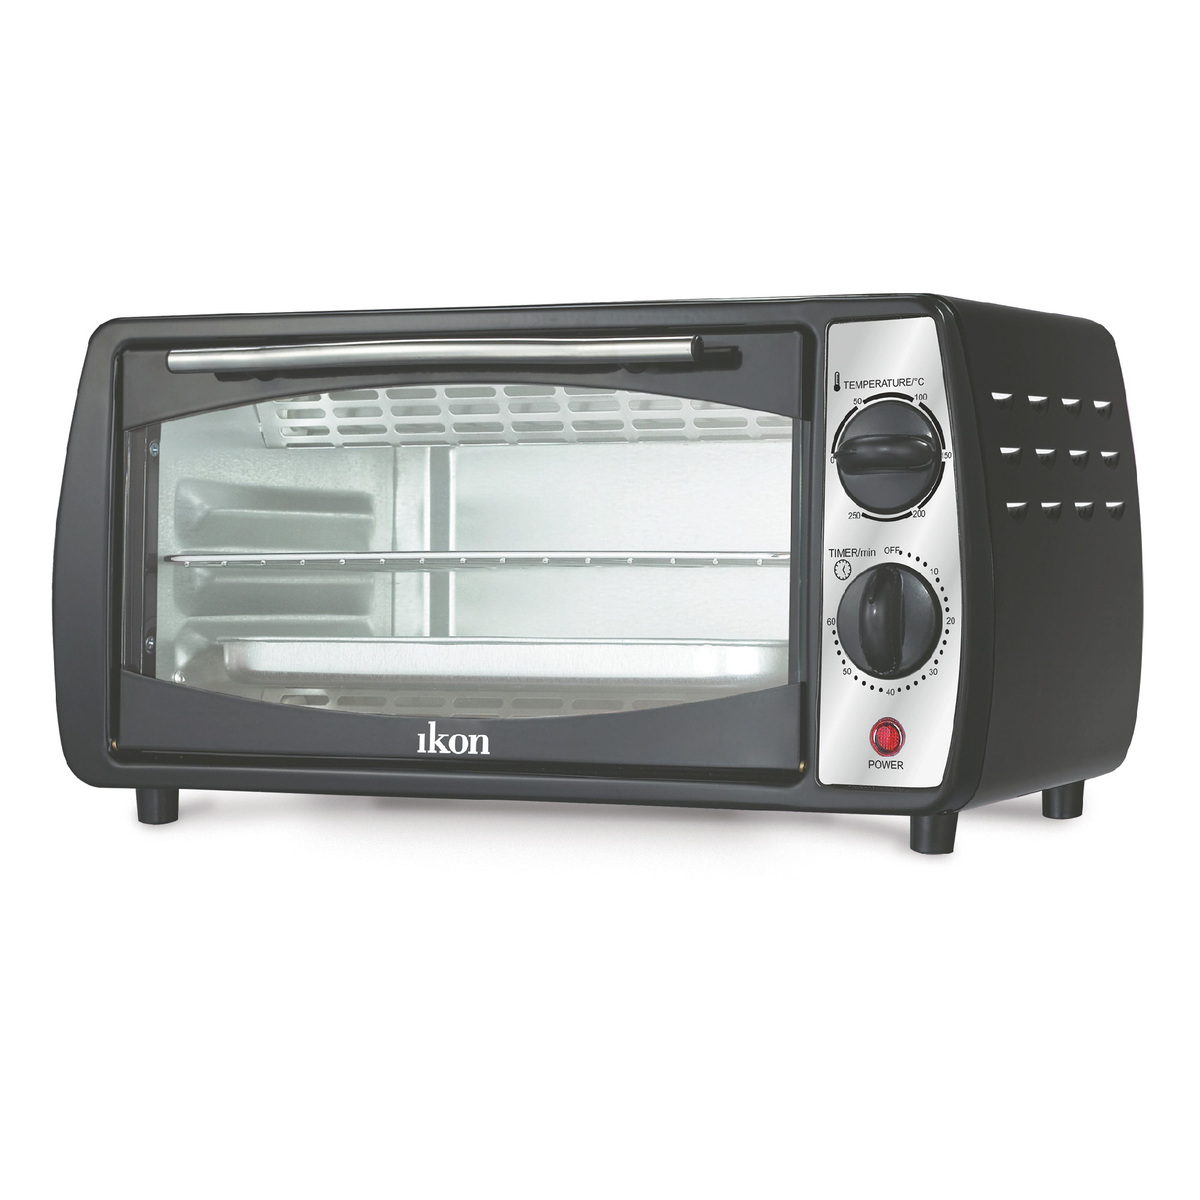 Ikon Oven Toaster, 1800 W, 11 L, Black, IK-EOI11